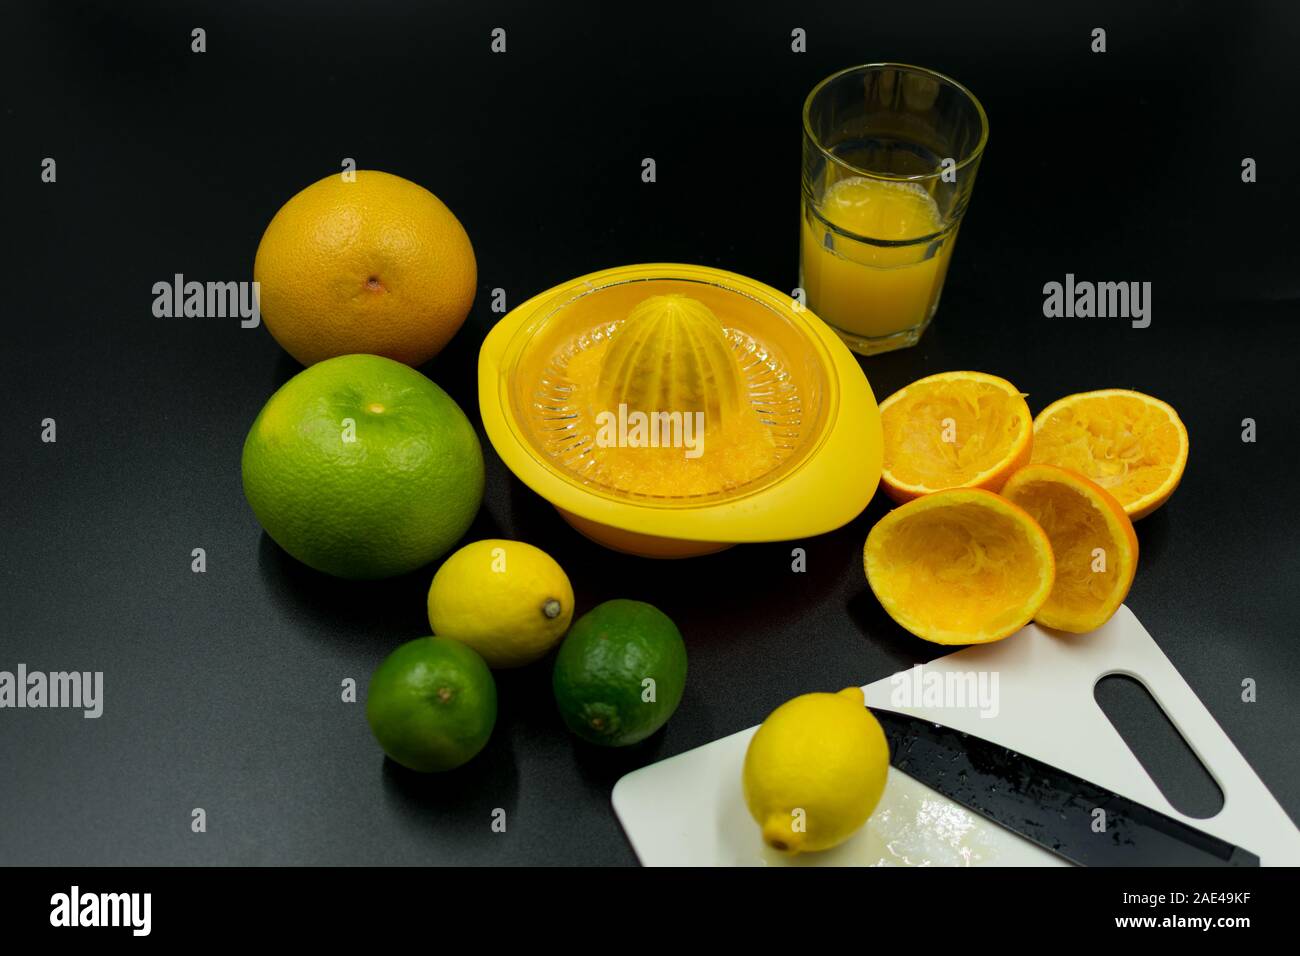 Presse-agrumes utilisés avec différents fruits, écorce d'orange et de verre. Sur fond noir Banque D'Images